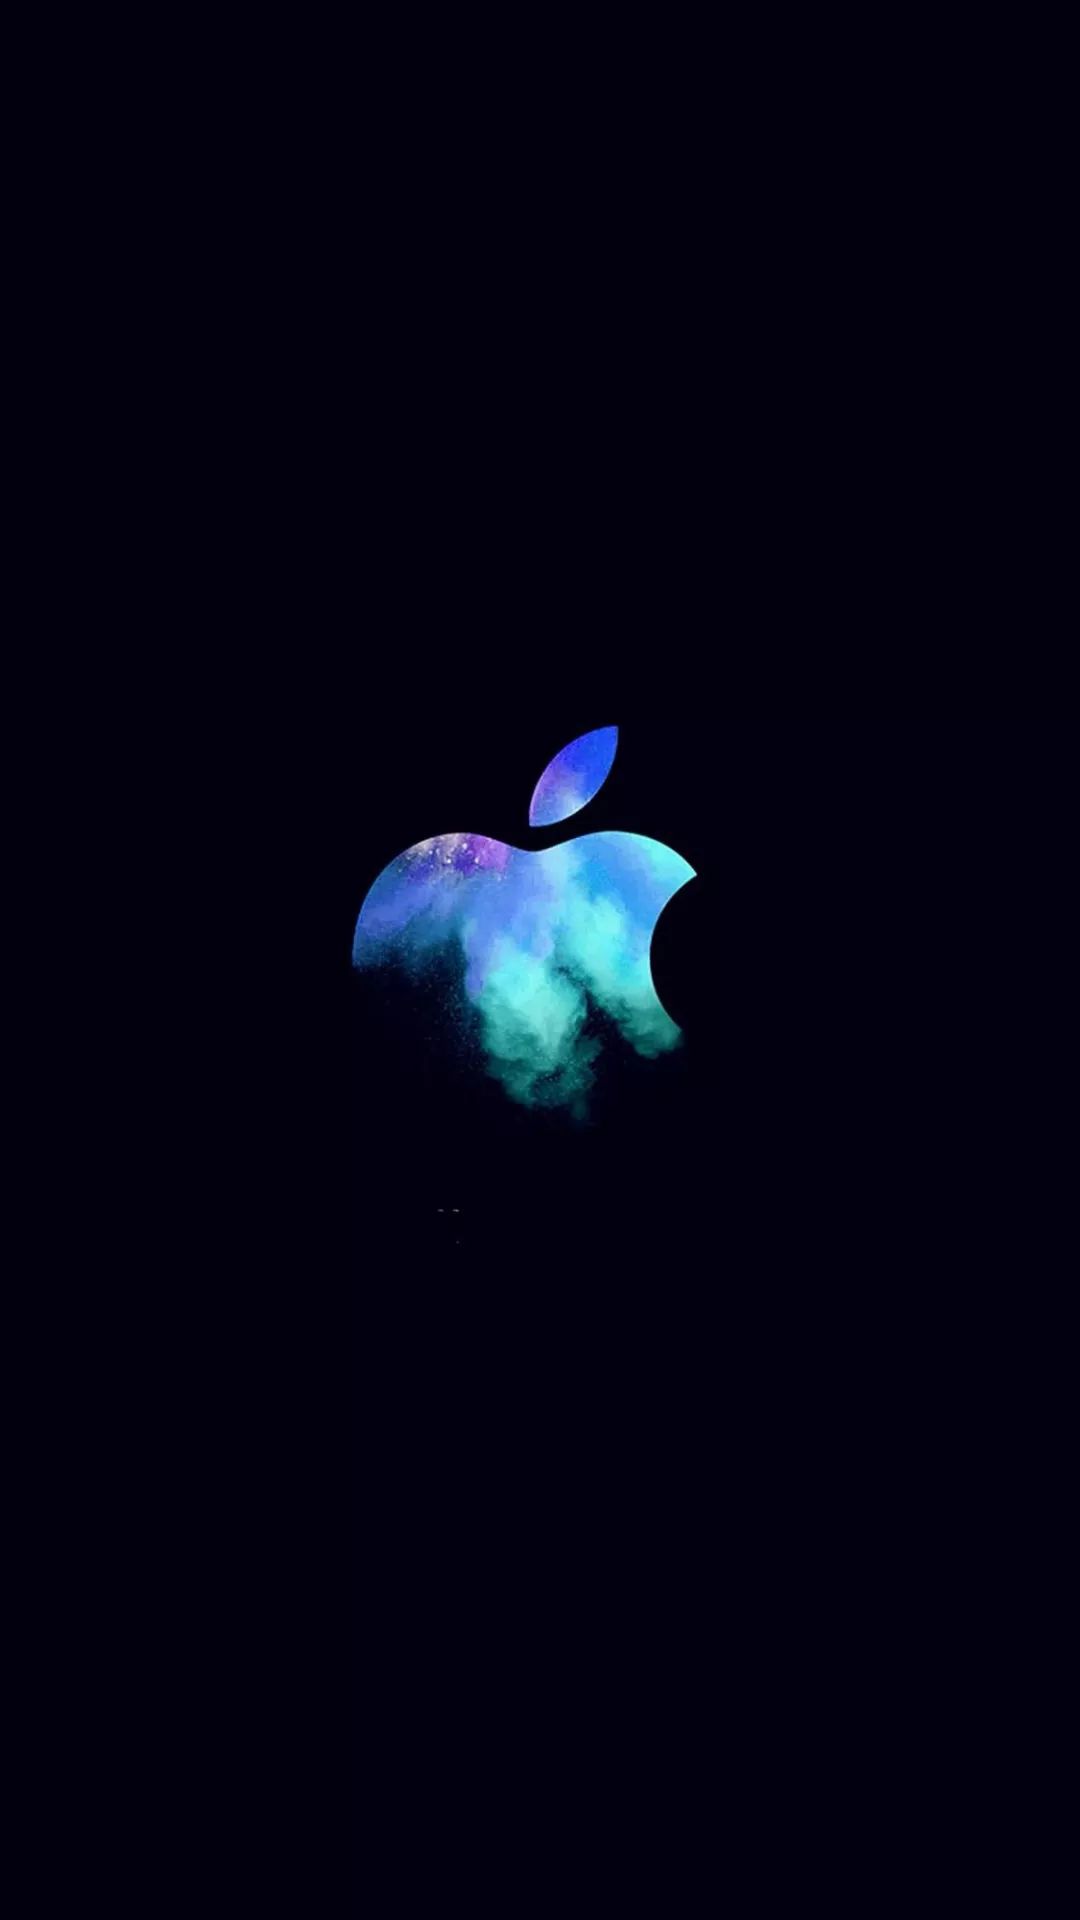 非全面屏|简单大气的苹果logo壁纸